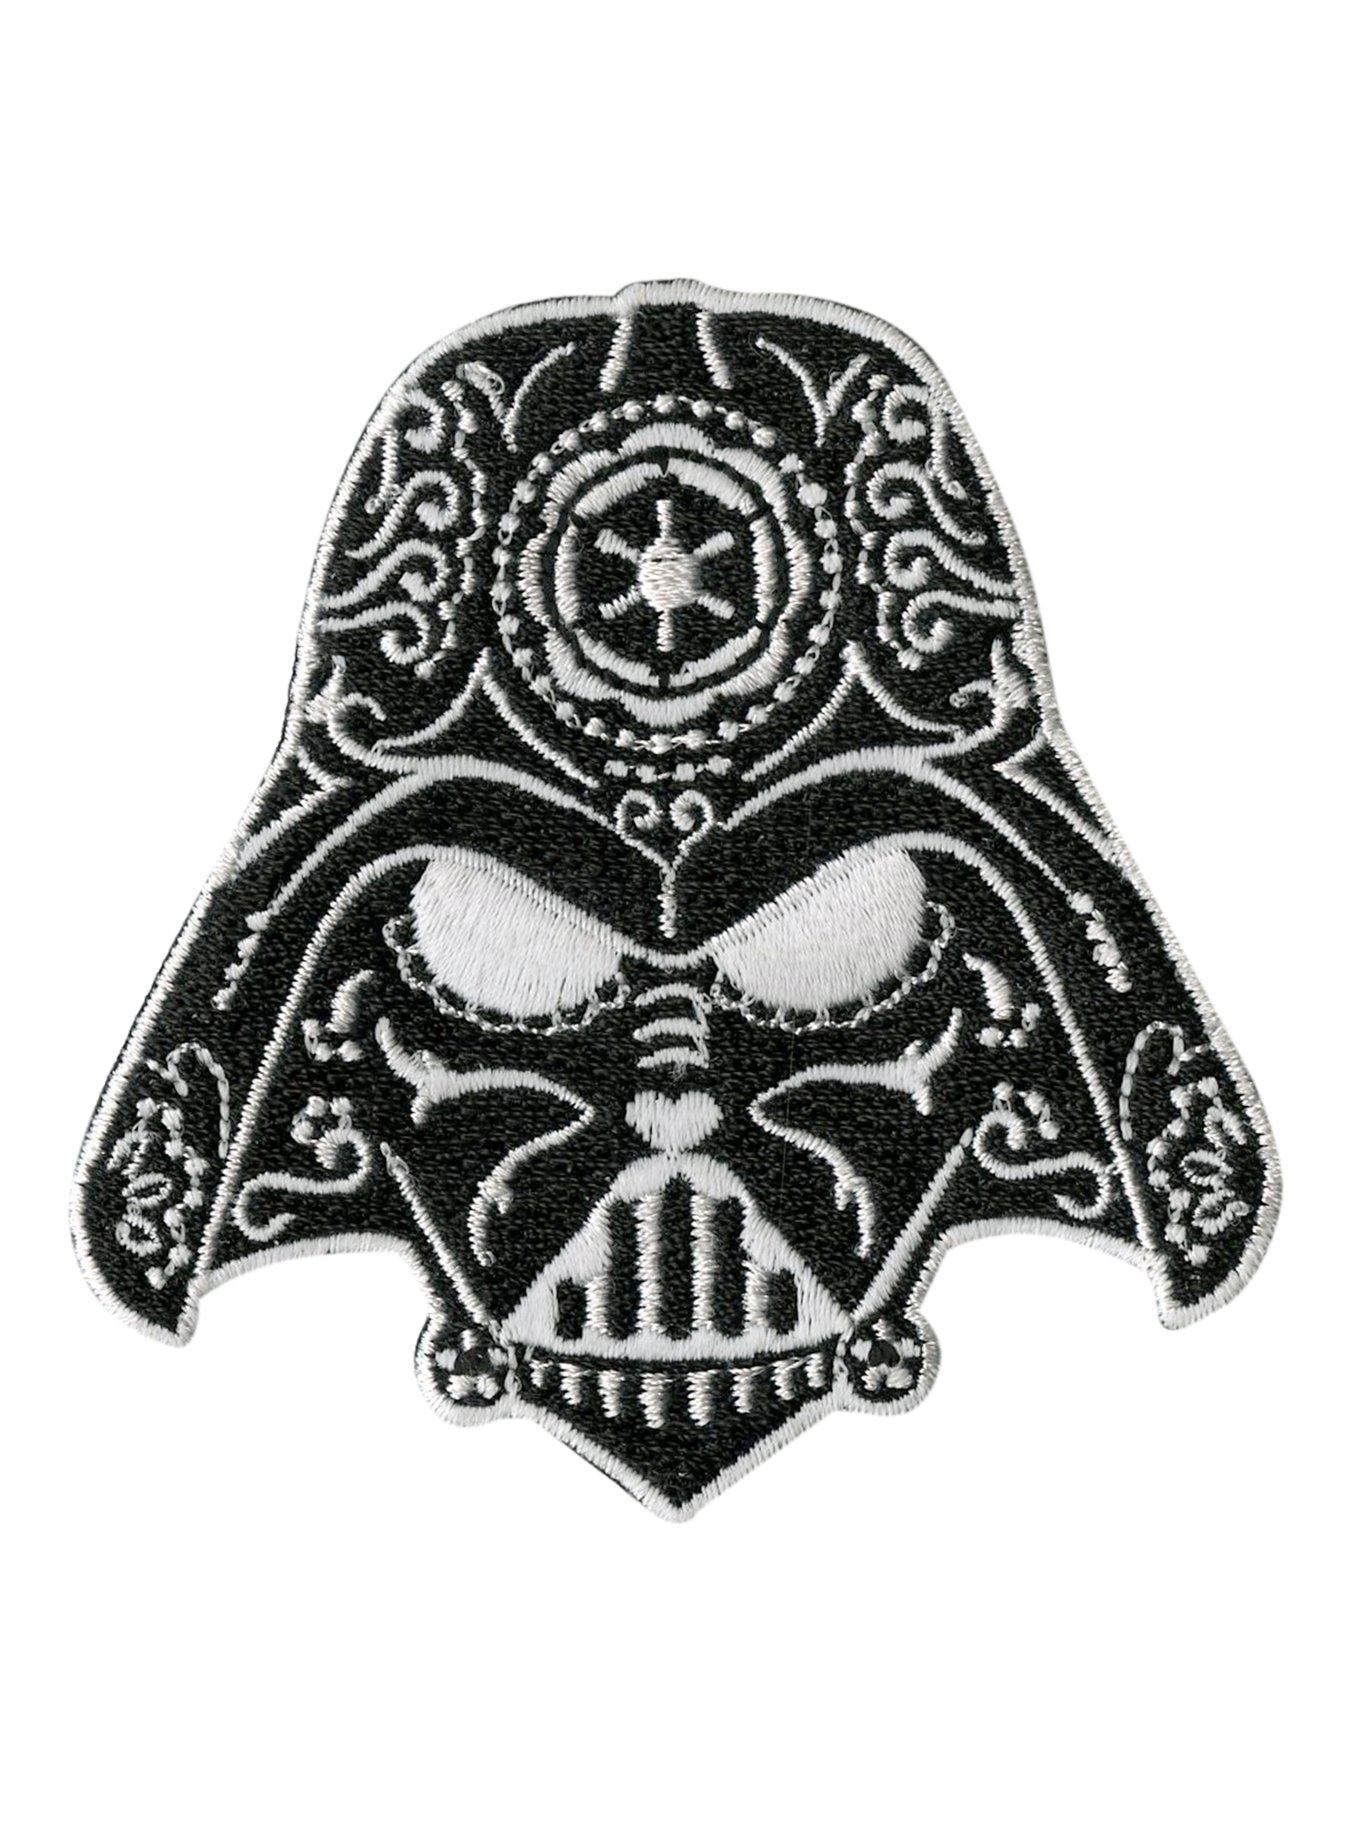 Star Wars Darth Vader Sugar Skull Helmet Iron-On Patch, , hi-res